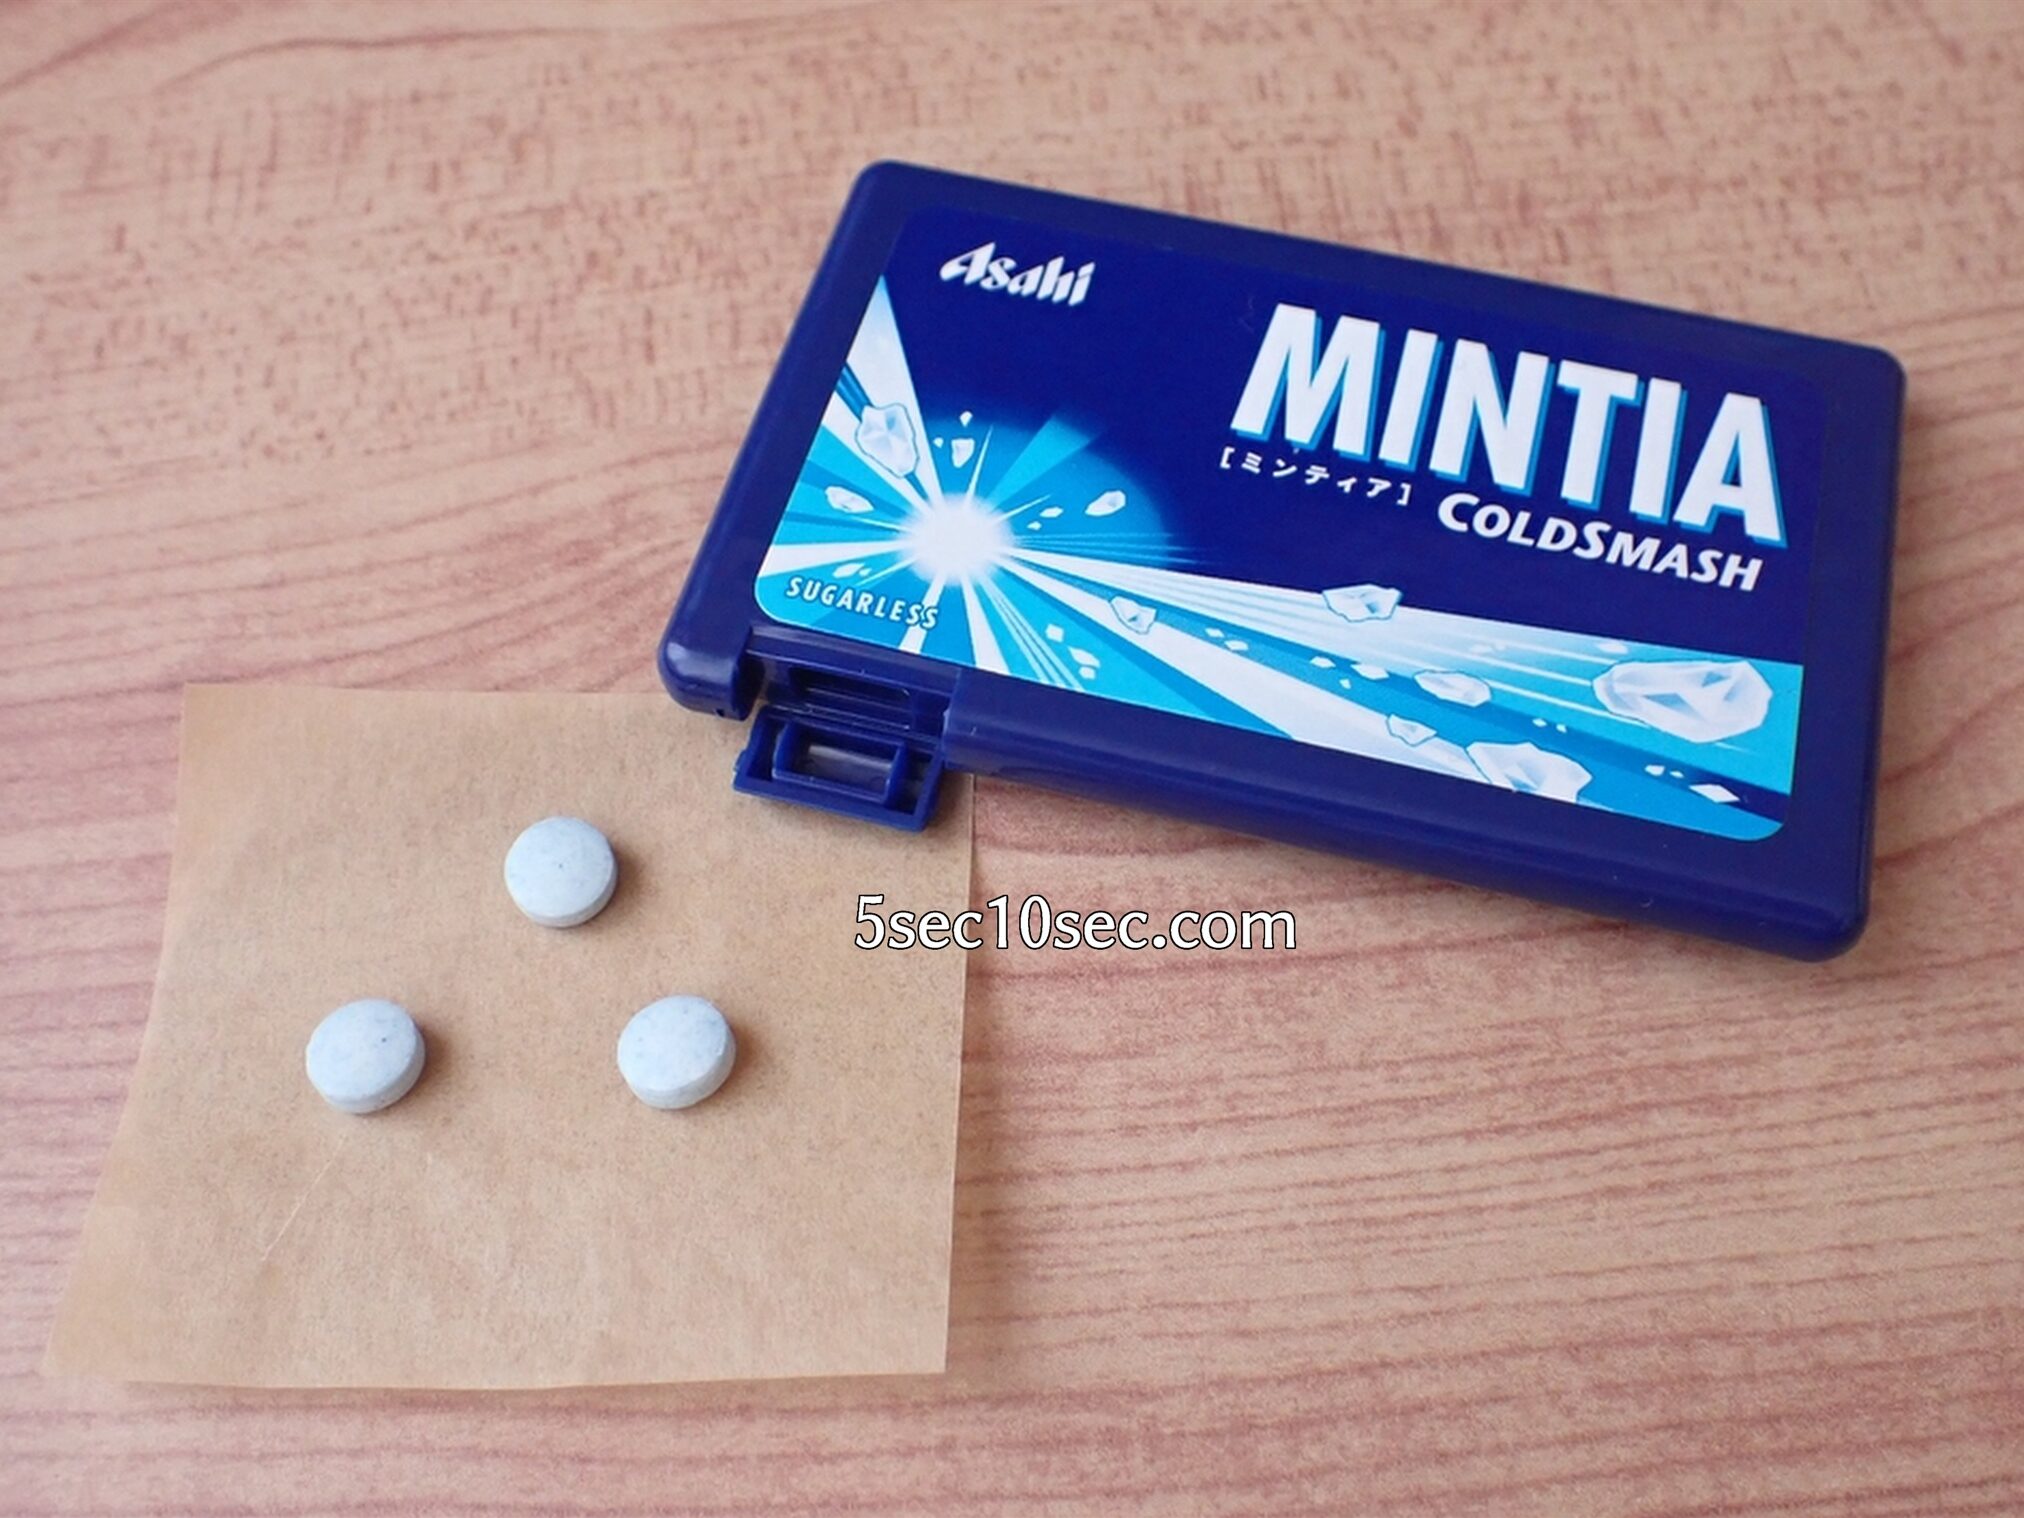 中身のミントタブレット菓子の写真 ミンティア コールドスマッシュ MINTIA COLDSMASH